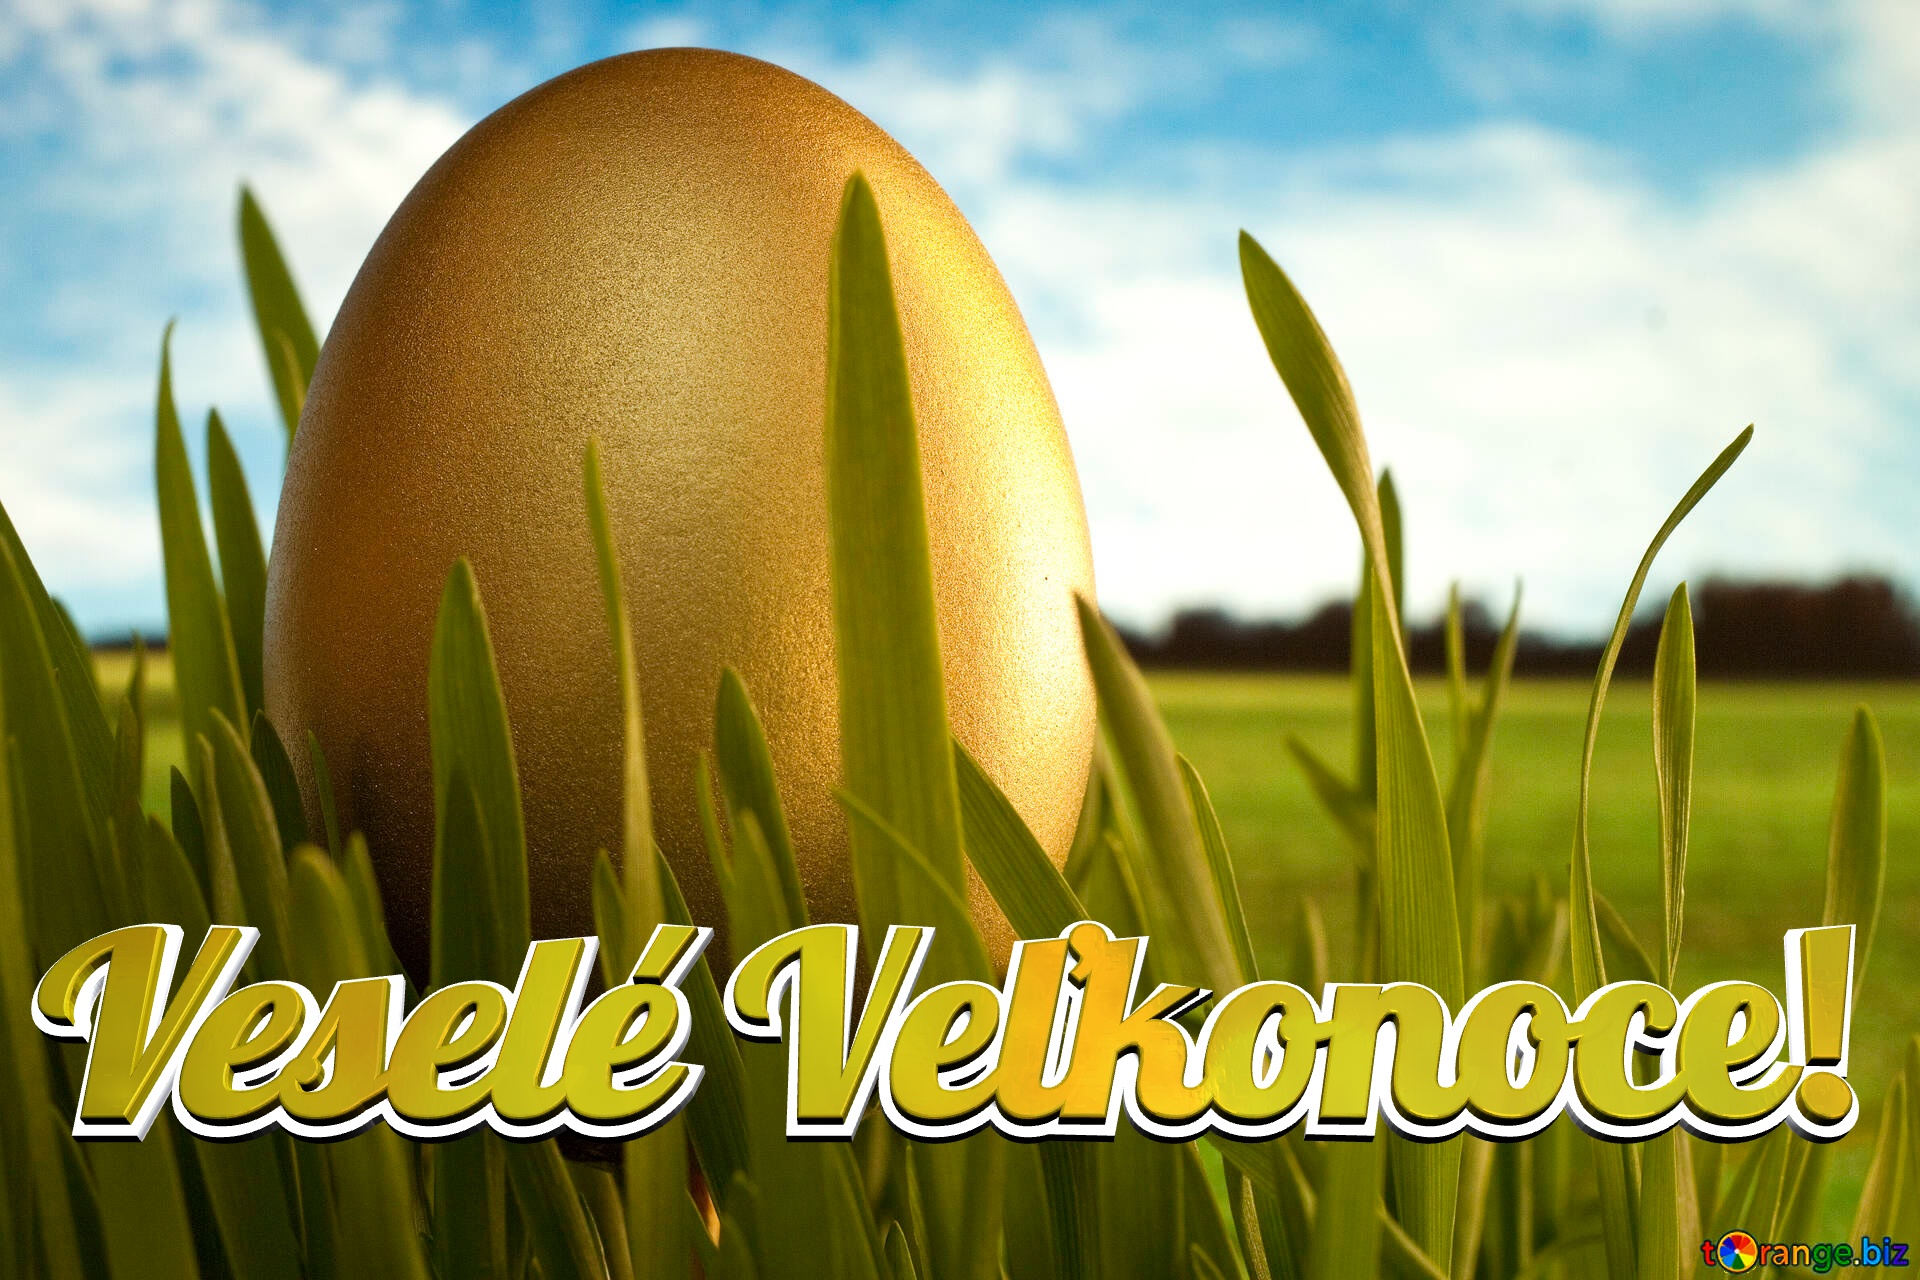 Veselé Veľkonoce!  Gold  Egg   grass №8132